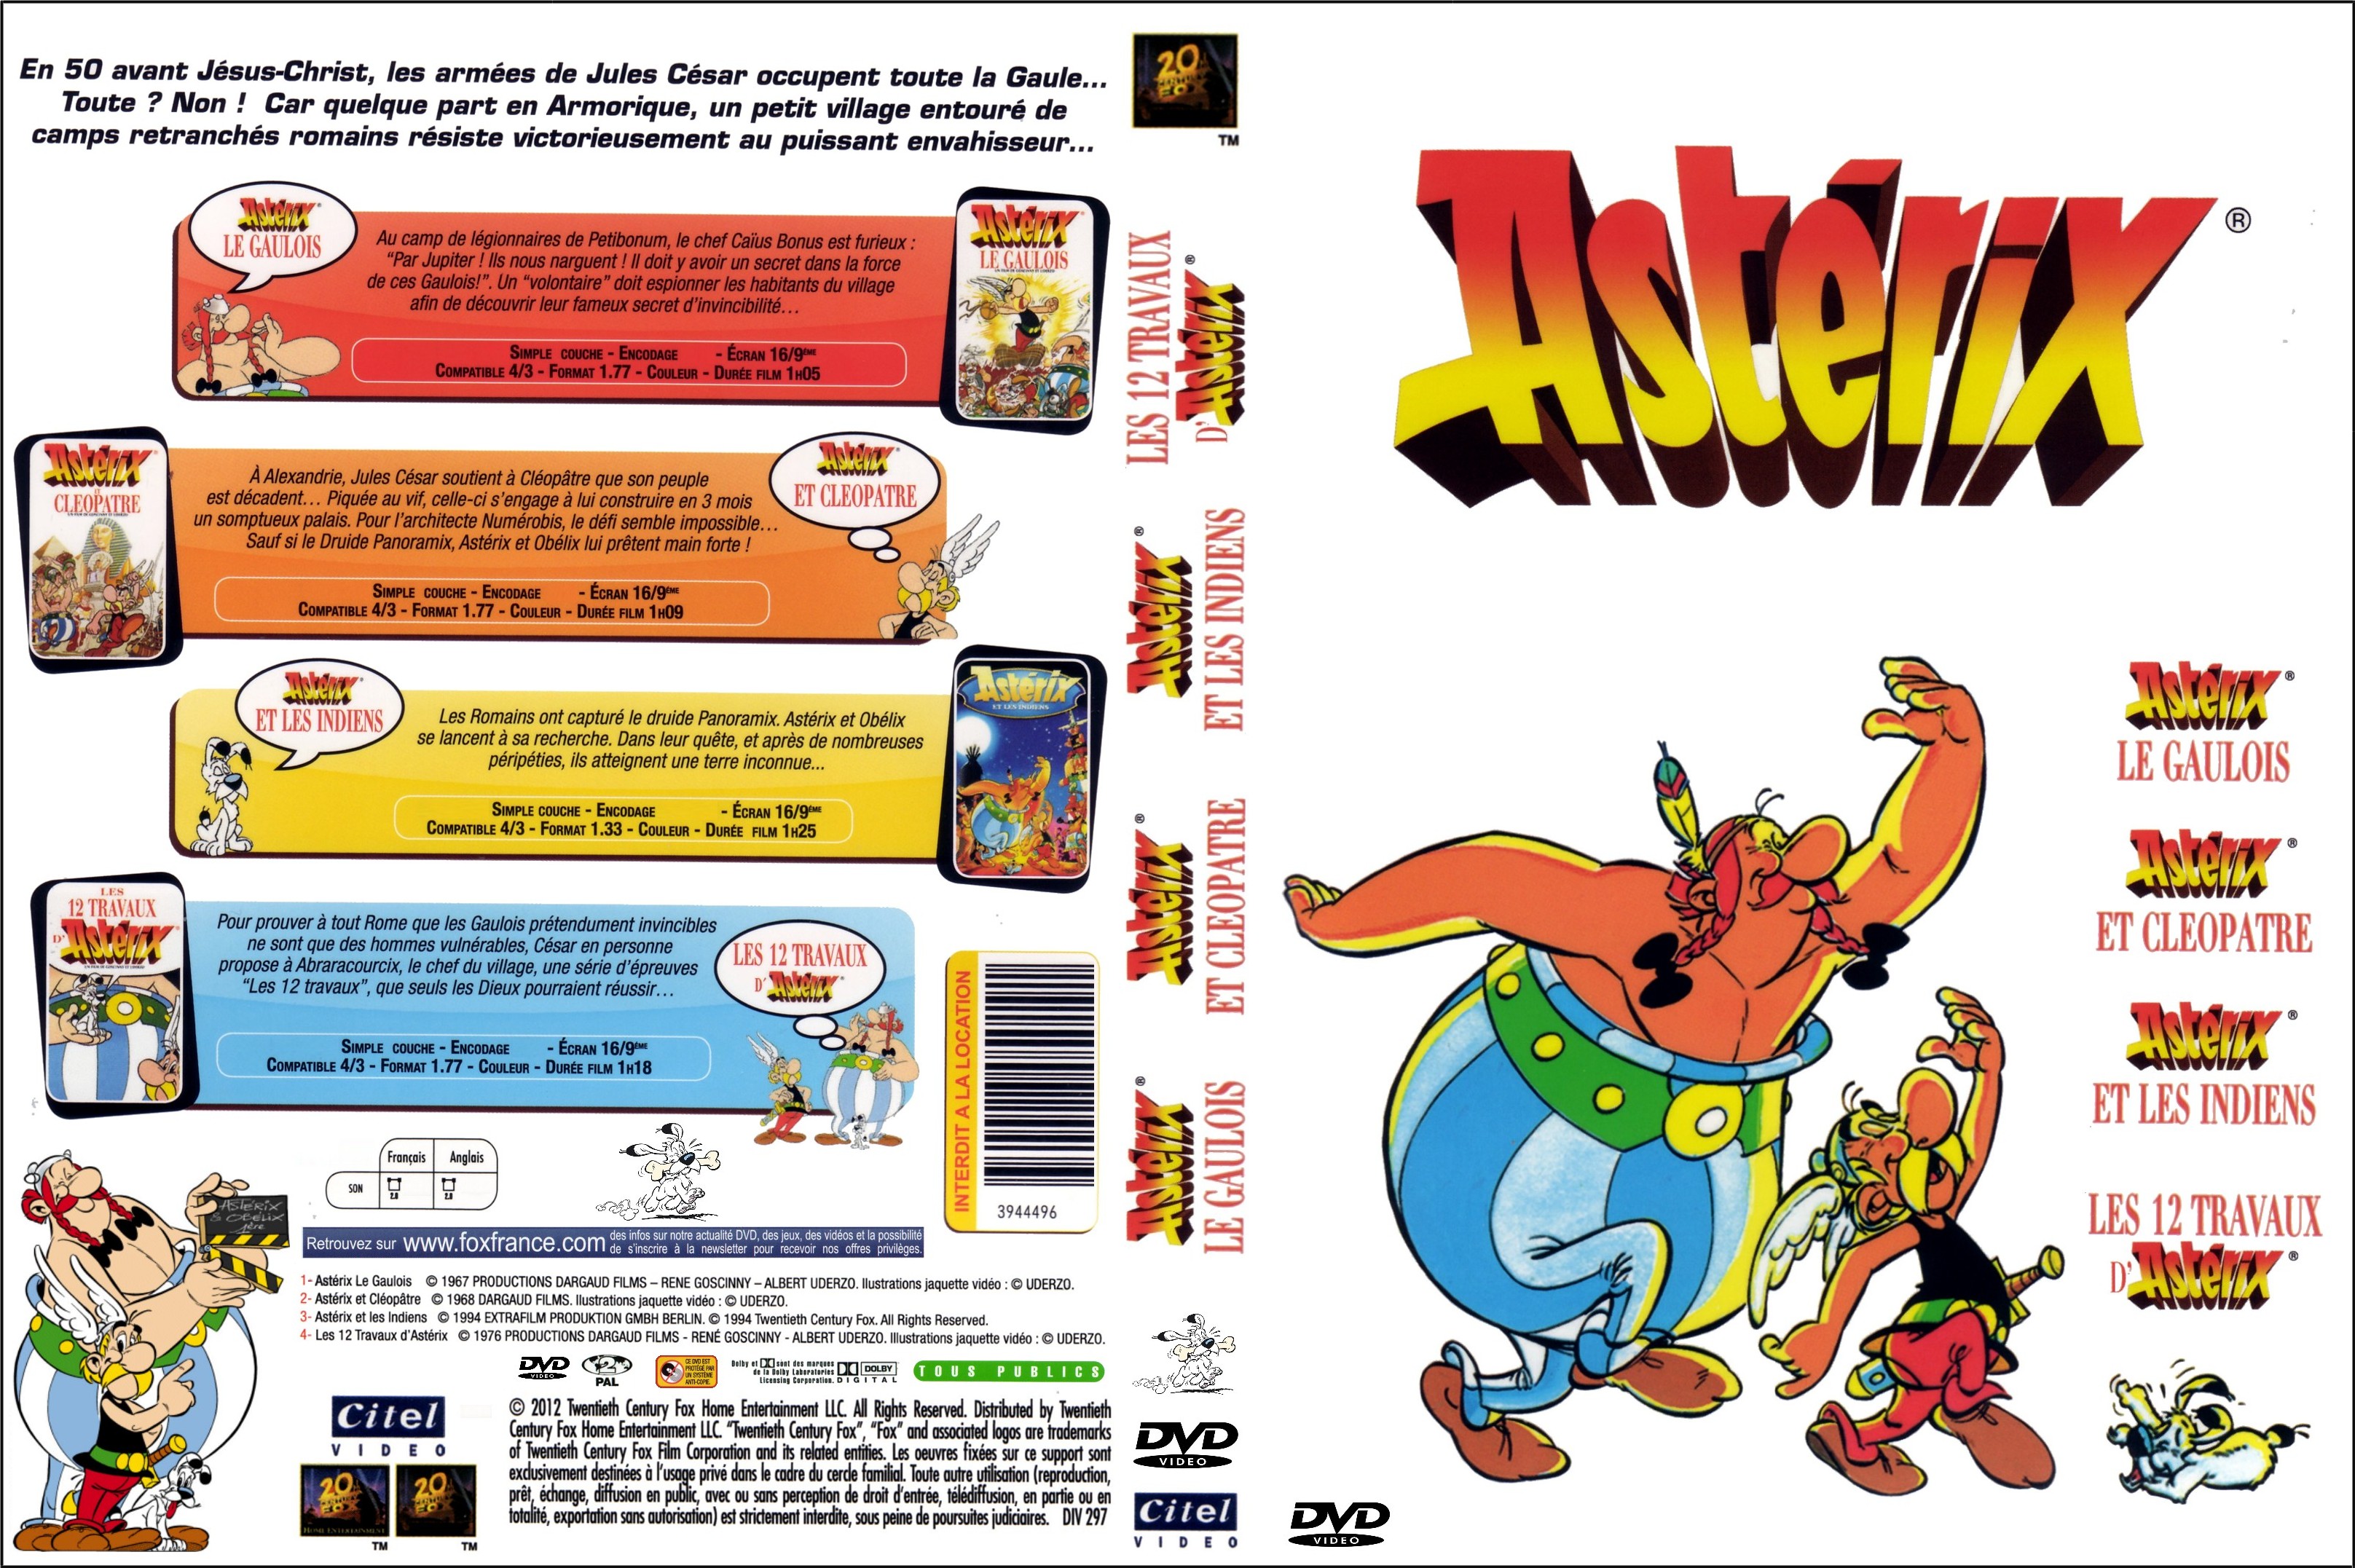 Jaquette DVD Asterix le gaulois + Asterix et Clopatre + Asterix et les indiens + Les 12 travaux d